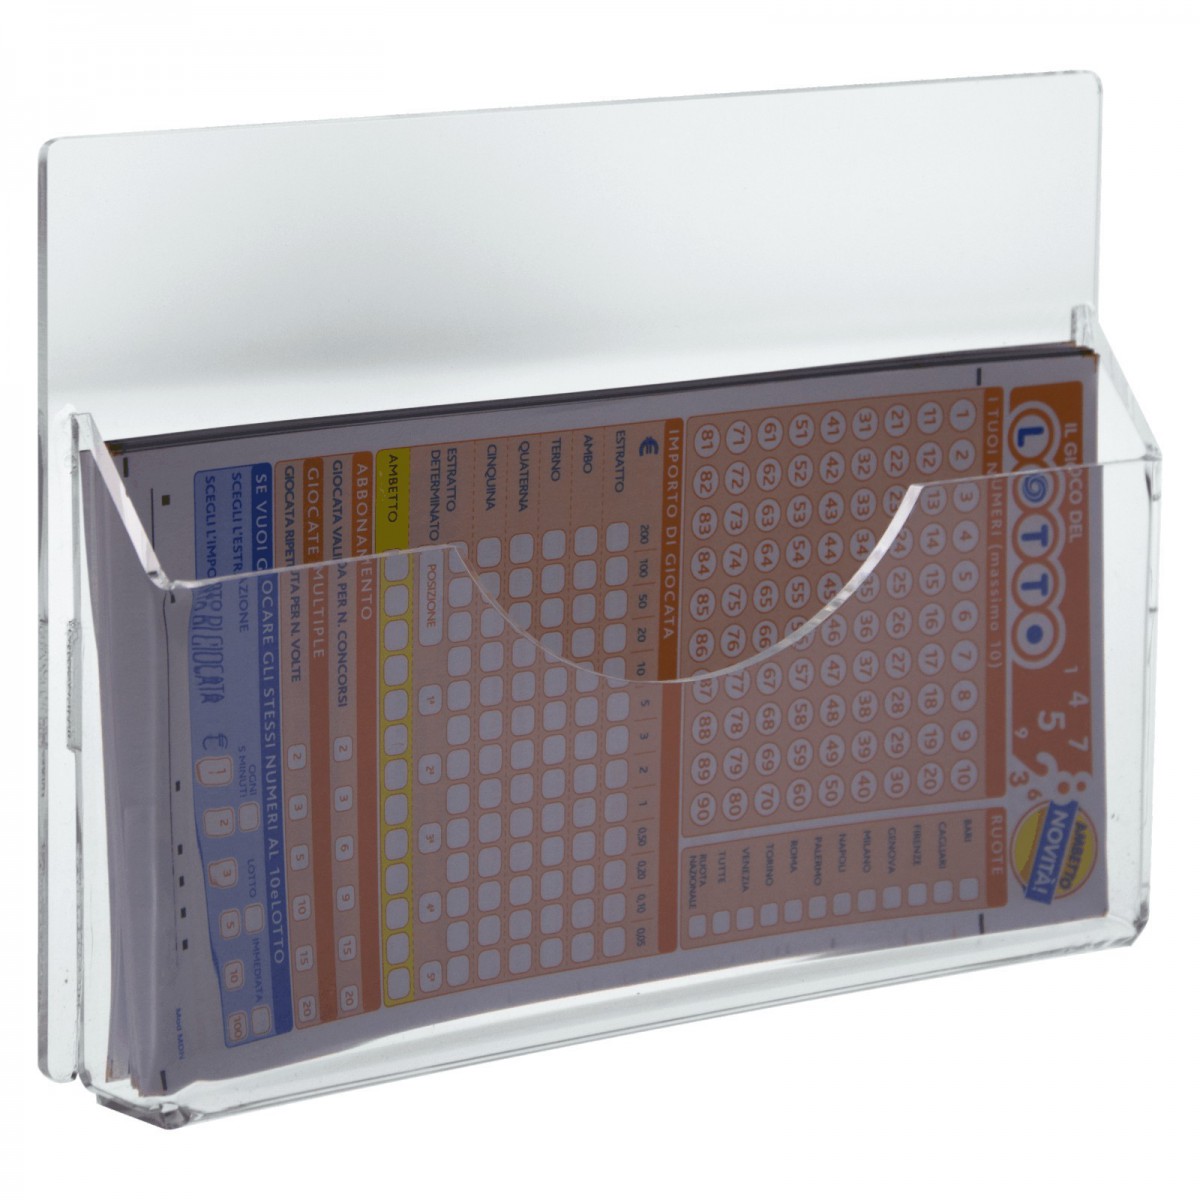 E-277 EPS - Espositore schedine da parete in plexiglass trasparente a 1 tasca - Misure: 23 x 3 x H15 cm